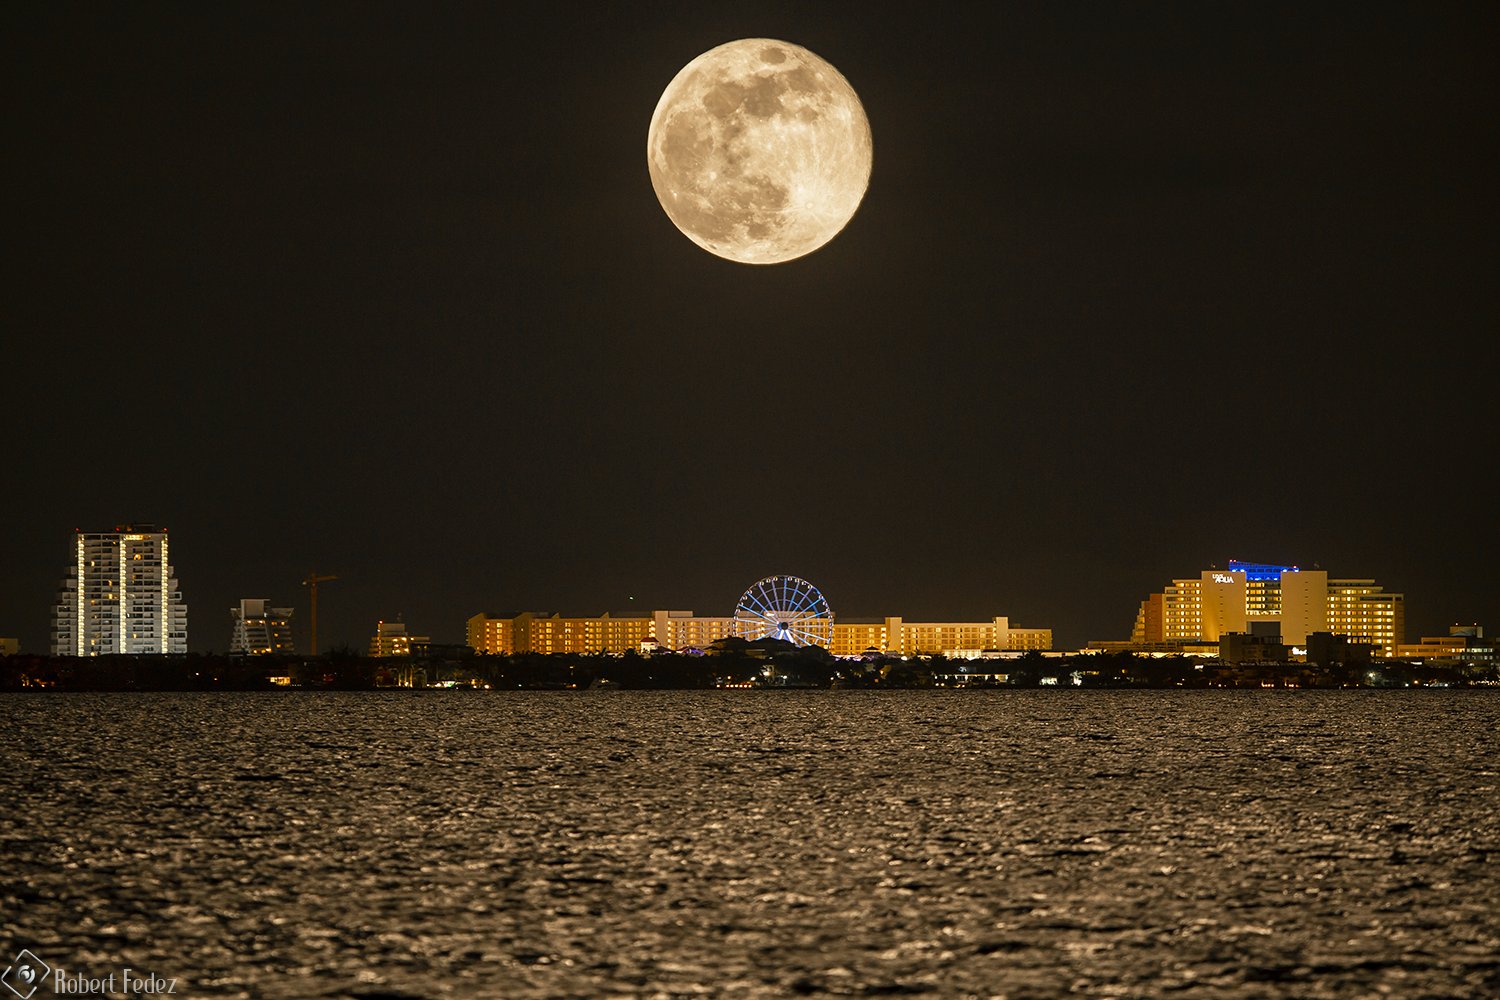 Usuarios en redes presumen fotos de la impresionante luna llena N+